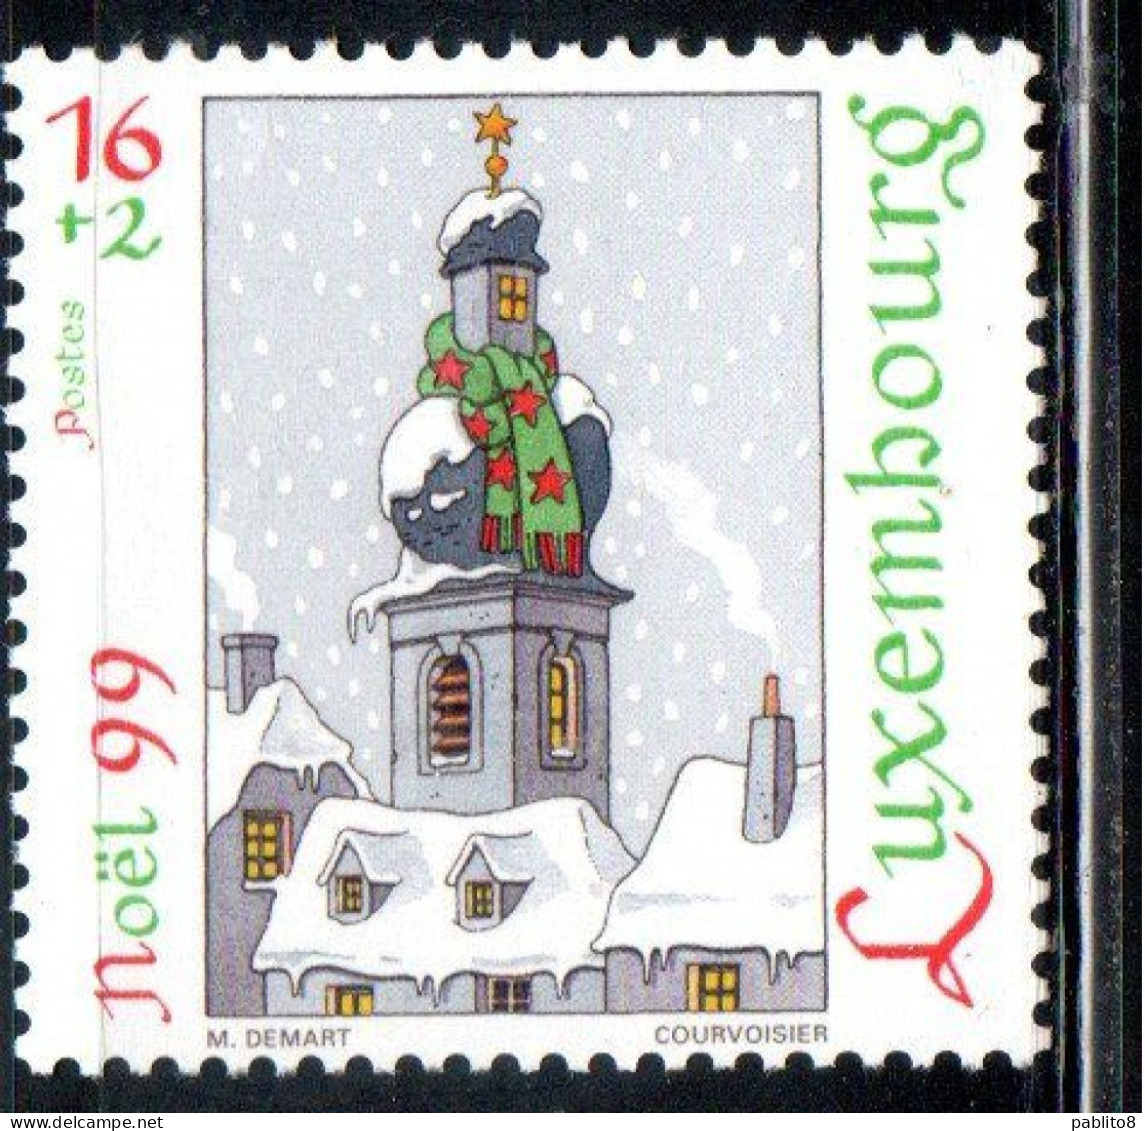 LUXEMBOURG LUSSEMBURGO 1999 CHRISTMAS NATALE NOEL WEIHNACHTEN NAVIDAD 16 +2 MNH - Unused Stamps